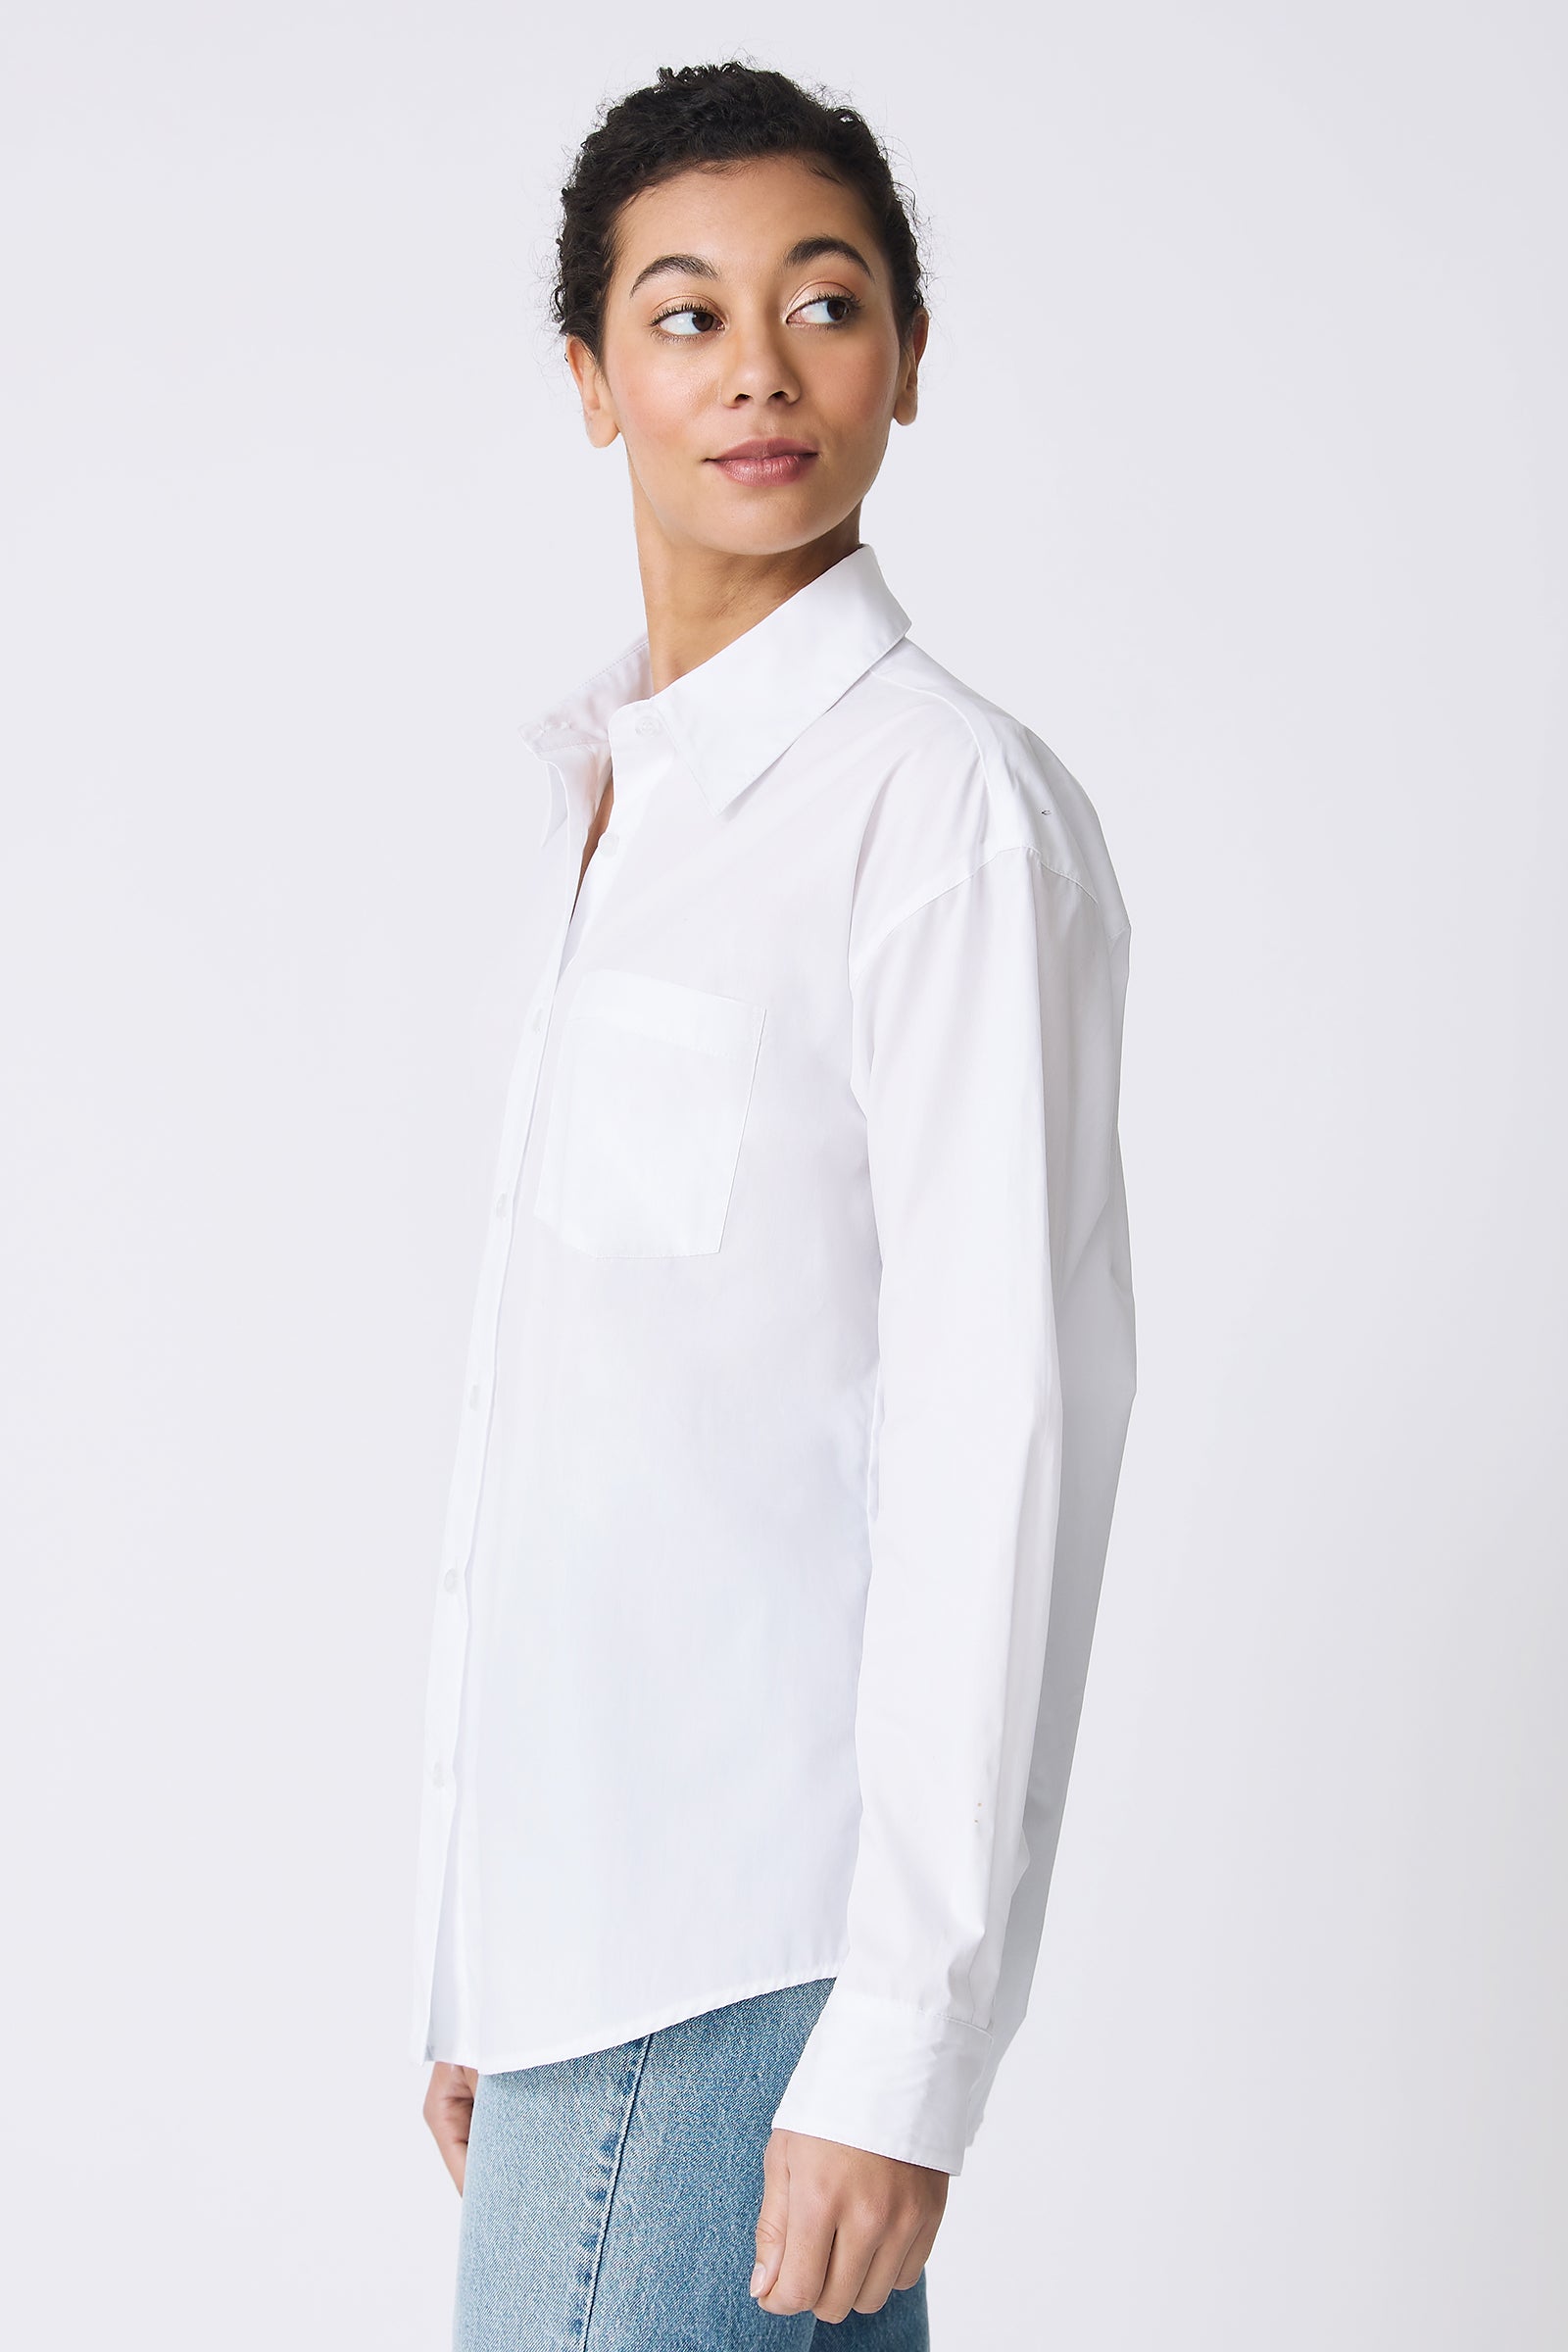 Kal Rieman Joni Boyfriend Shirt in White Poplin on model looking over shoulder side view